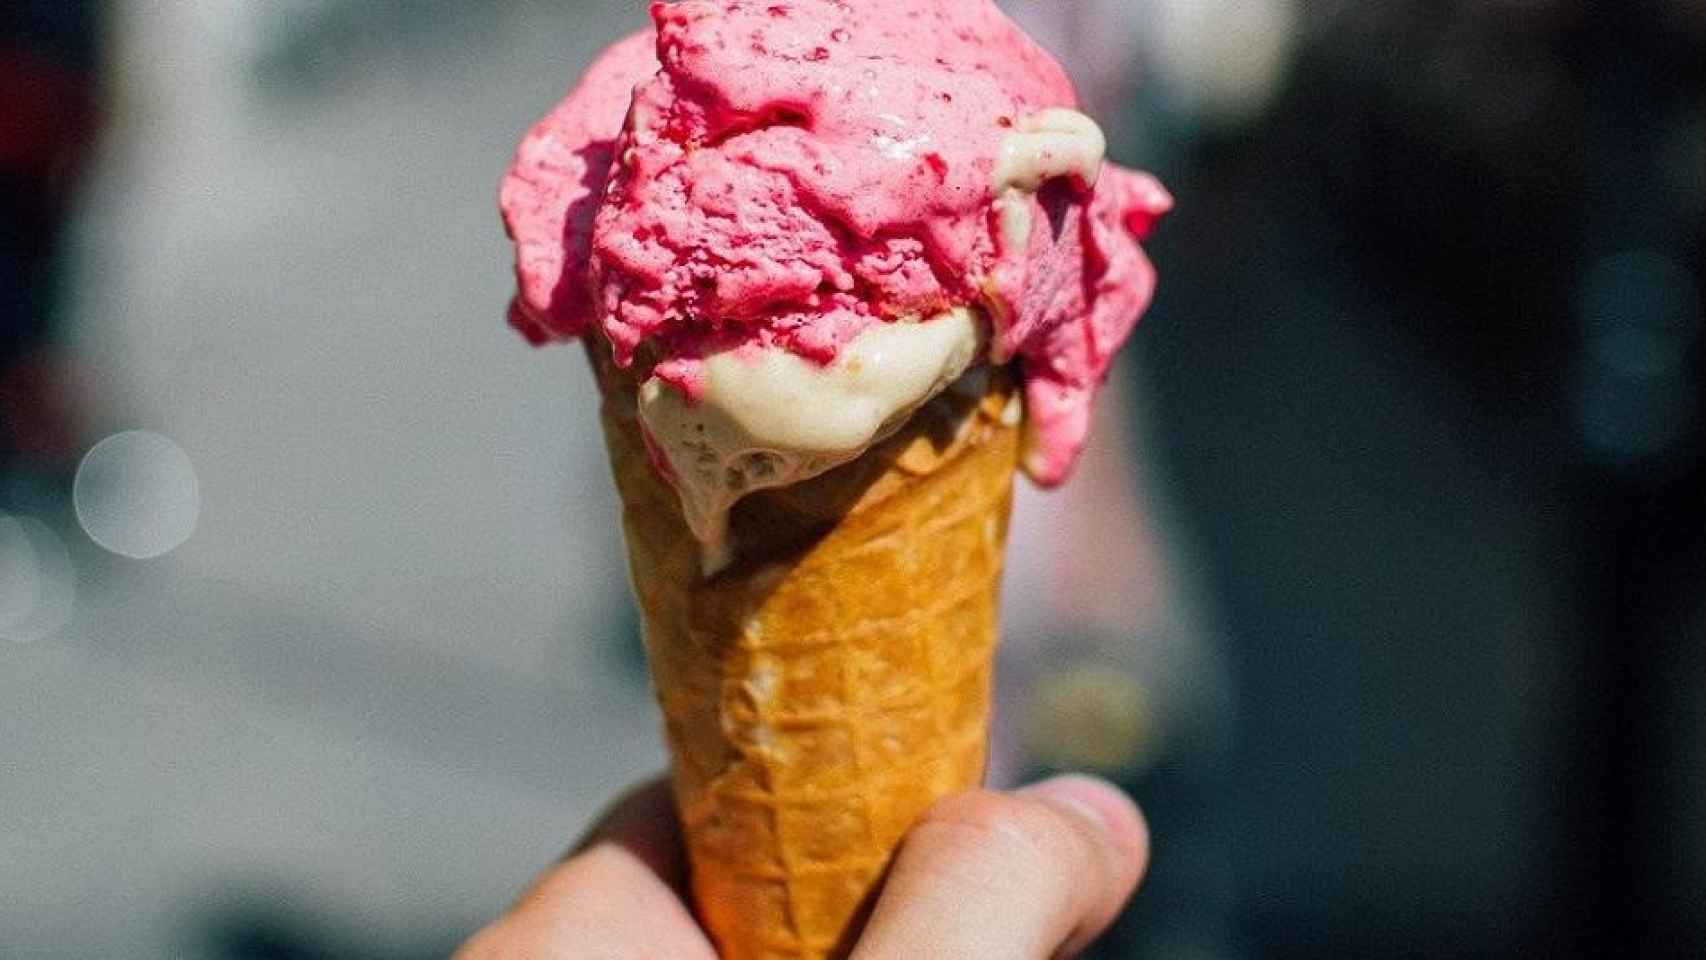 Un helado artesanal, la joya de las heladerías de Barcelona / StockSnap EN PIXABAY